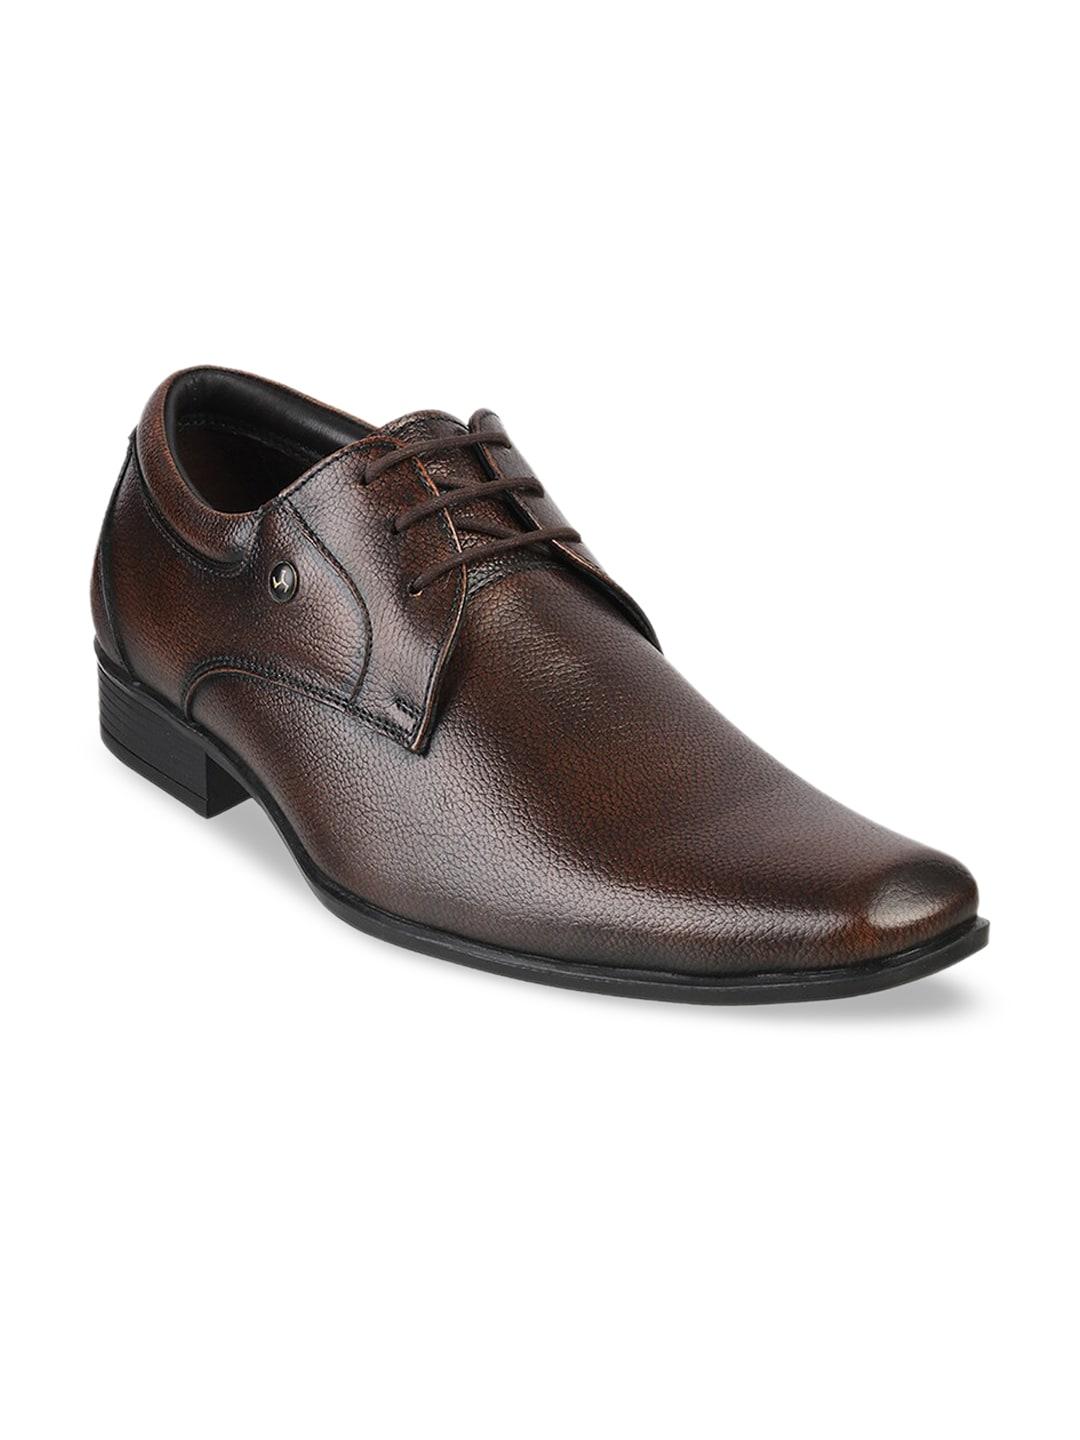 mochi-men-brown-solid-leather-formal-derbys